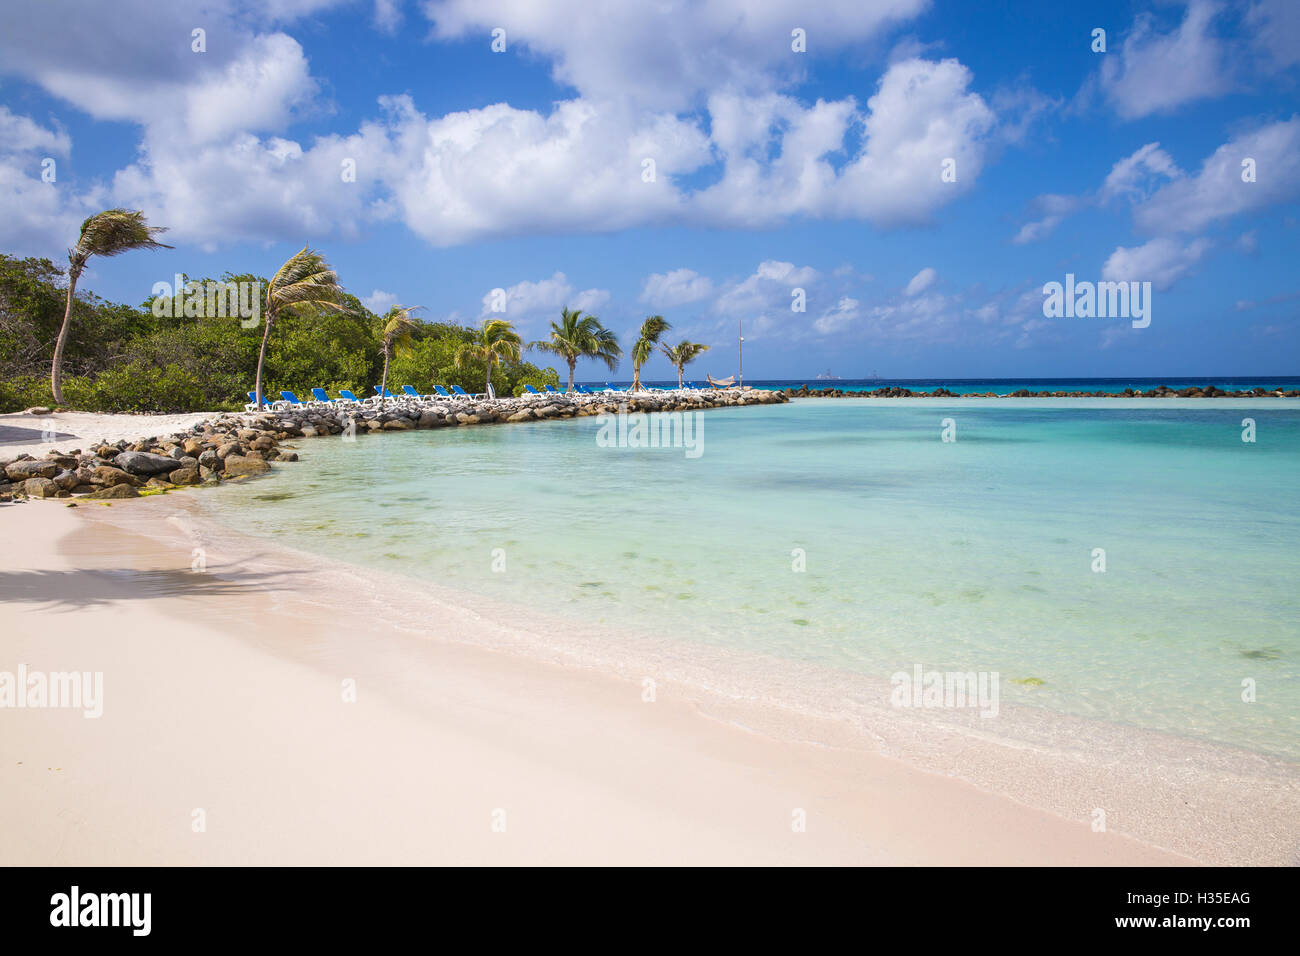 L'île de la Renaissance, Oranjestad, Aruba, Lesser Antilles, Caraïbes, Antilles néerlandaises Banque D'Images